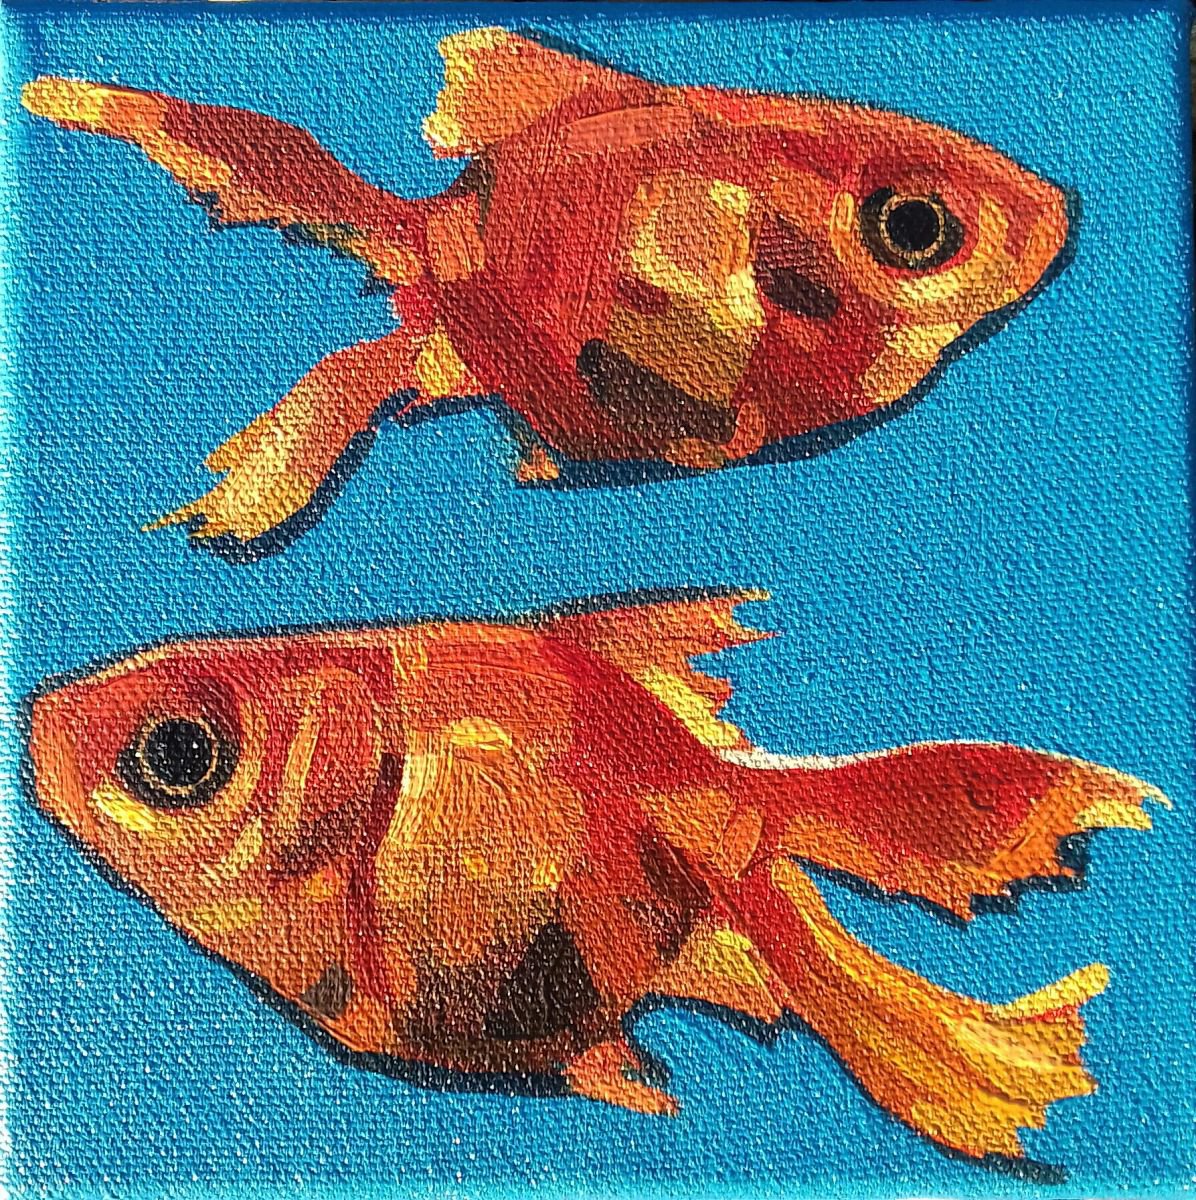 Goldfish by Matthew Stutely